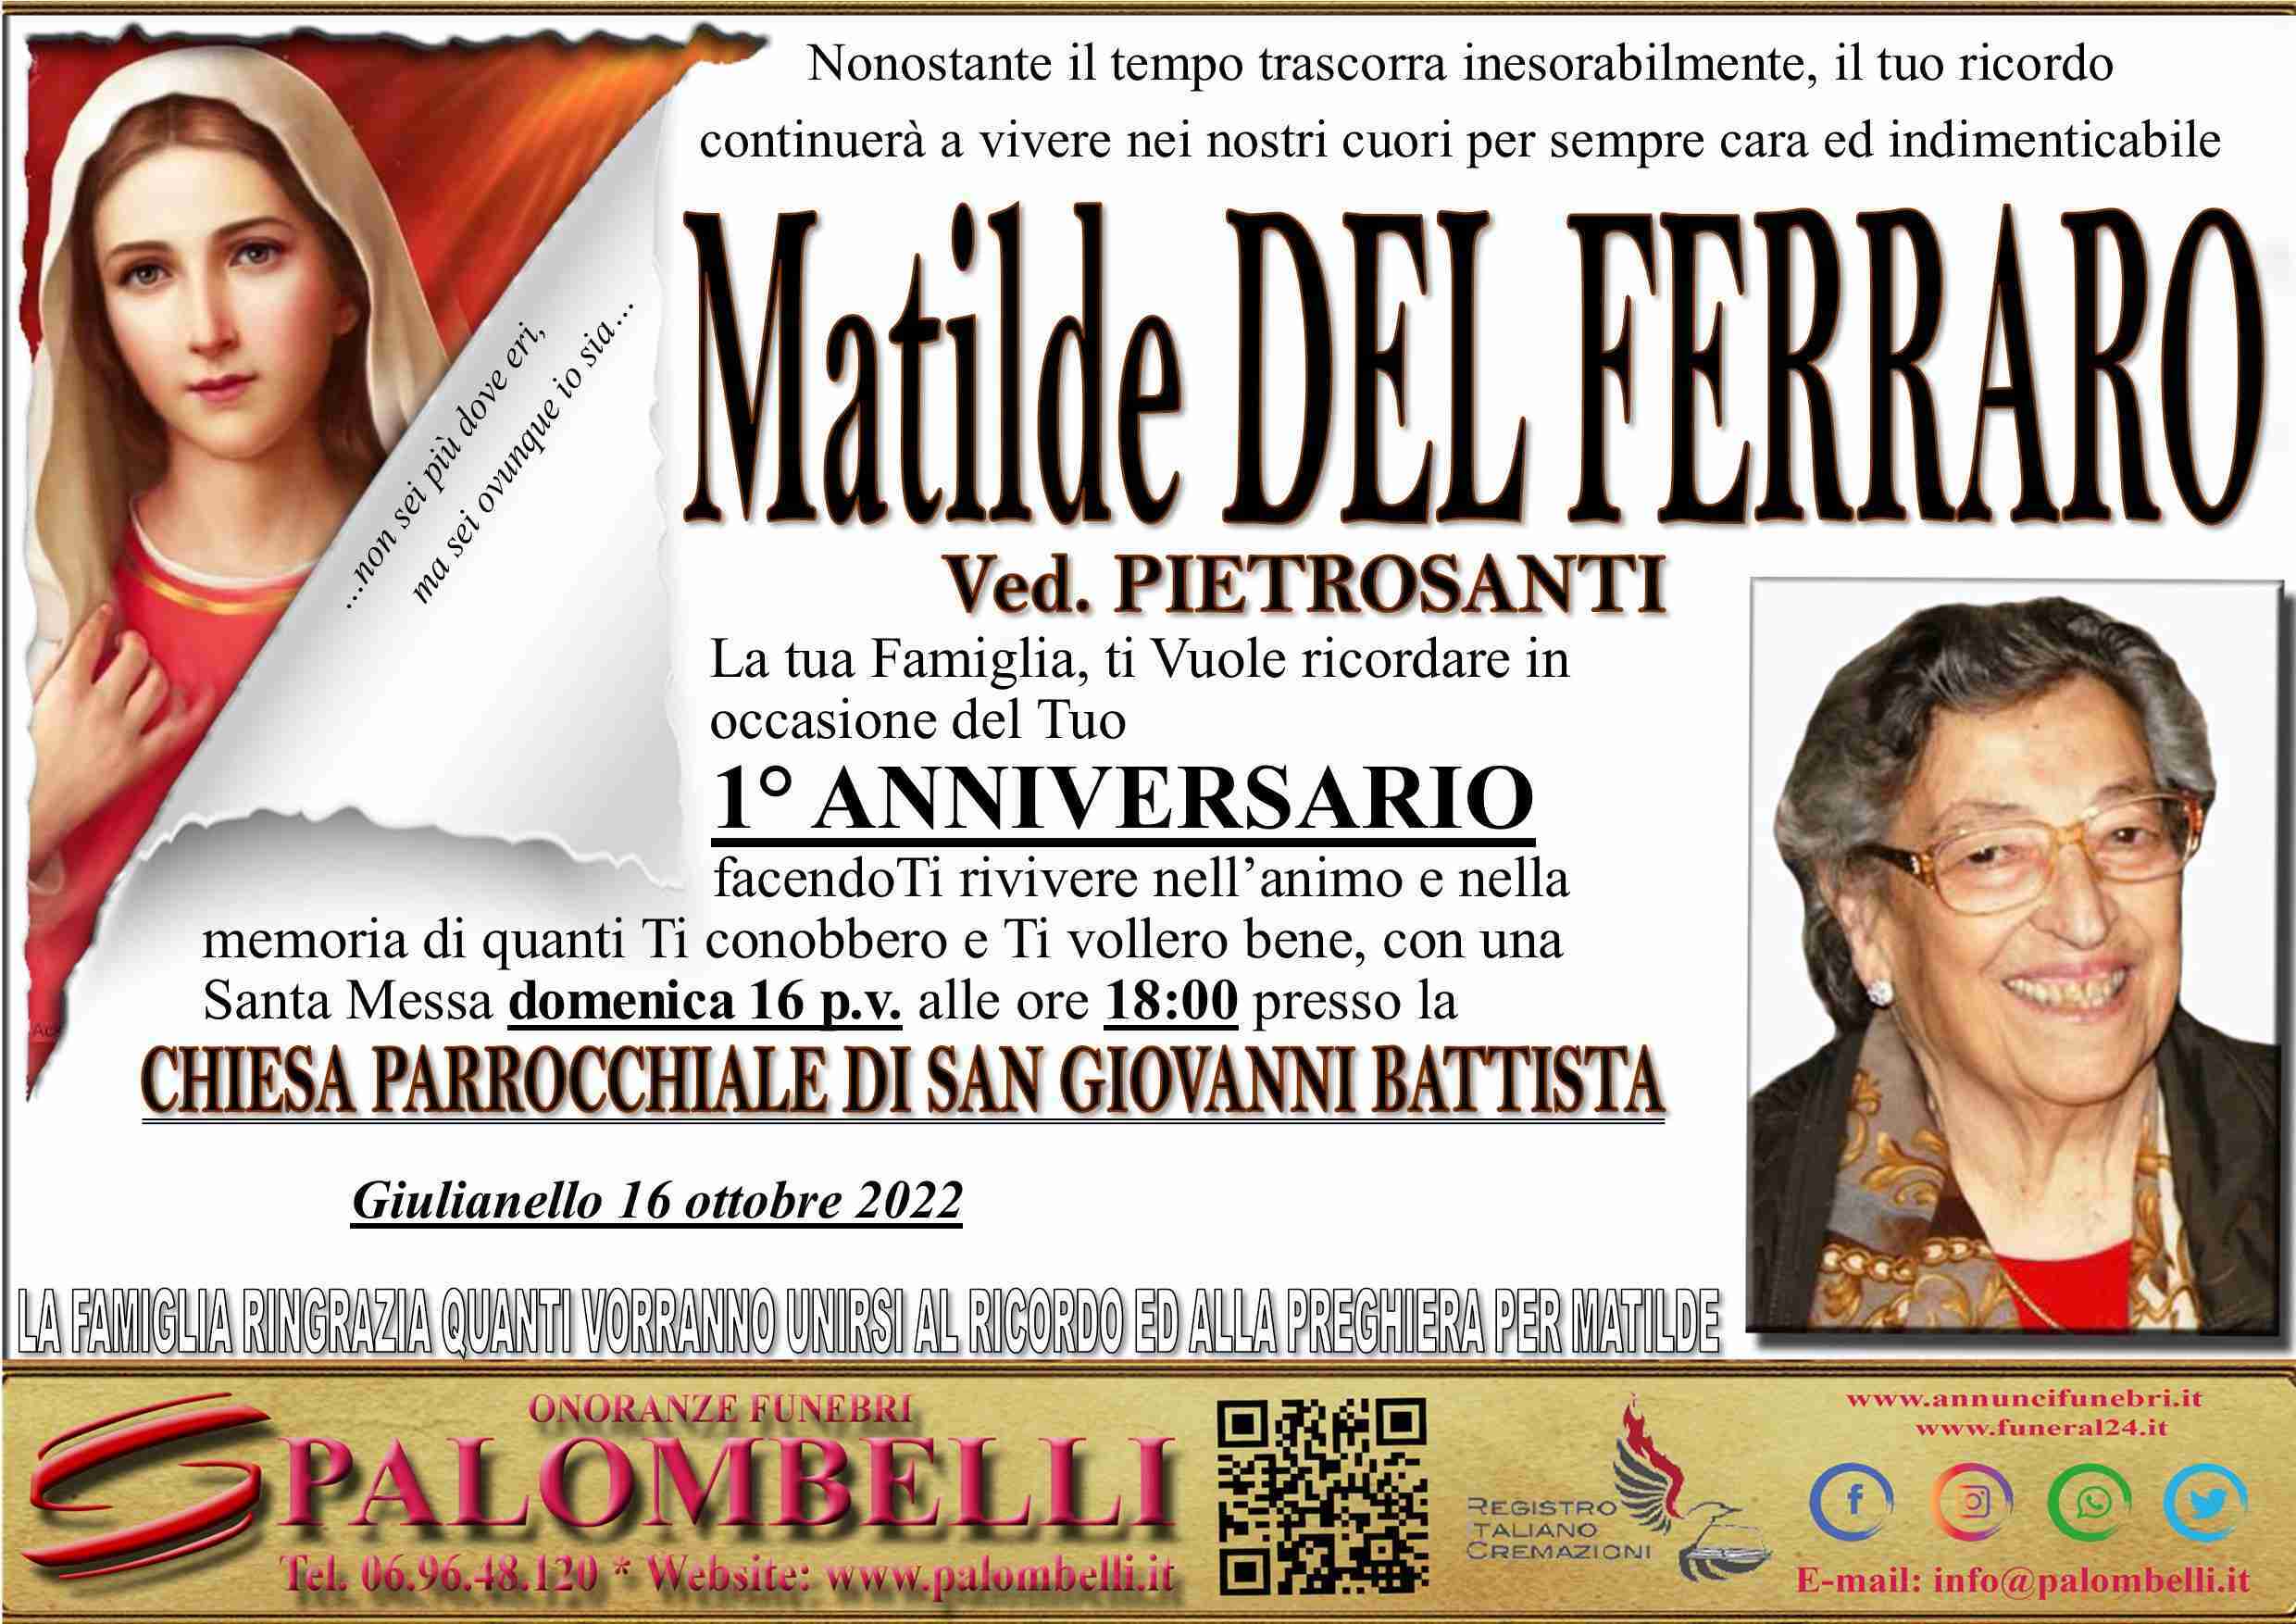 Matilde Del Ferraro